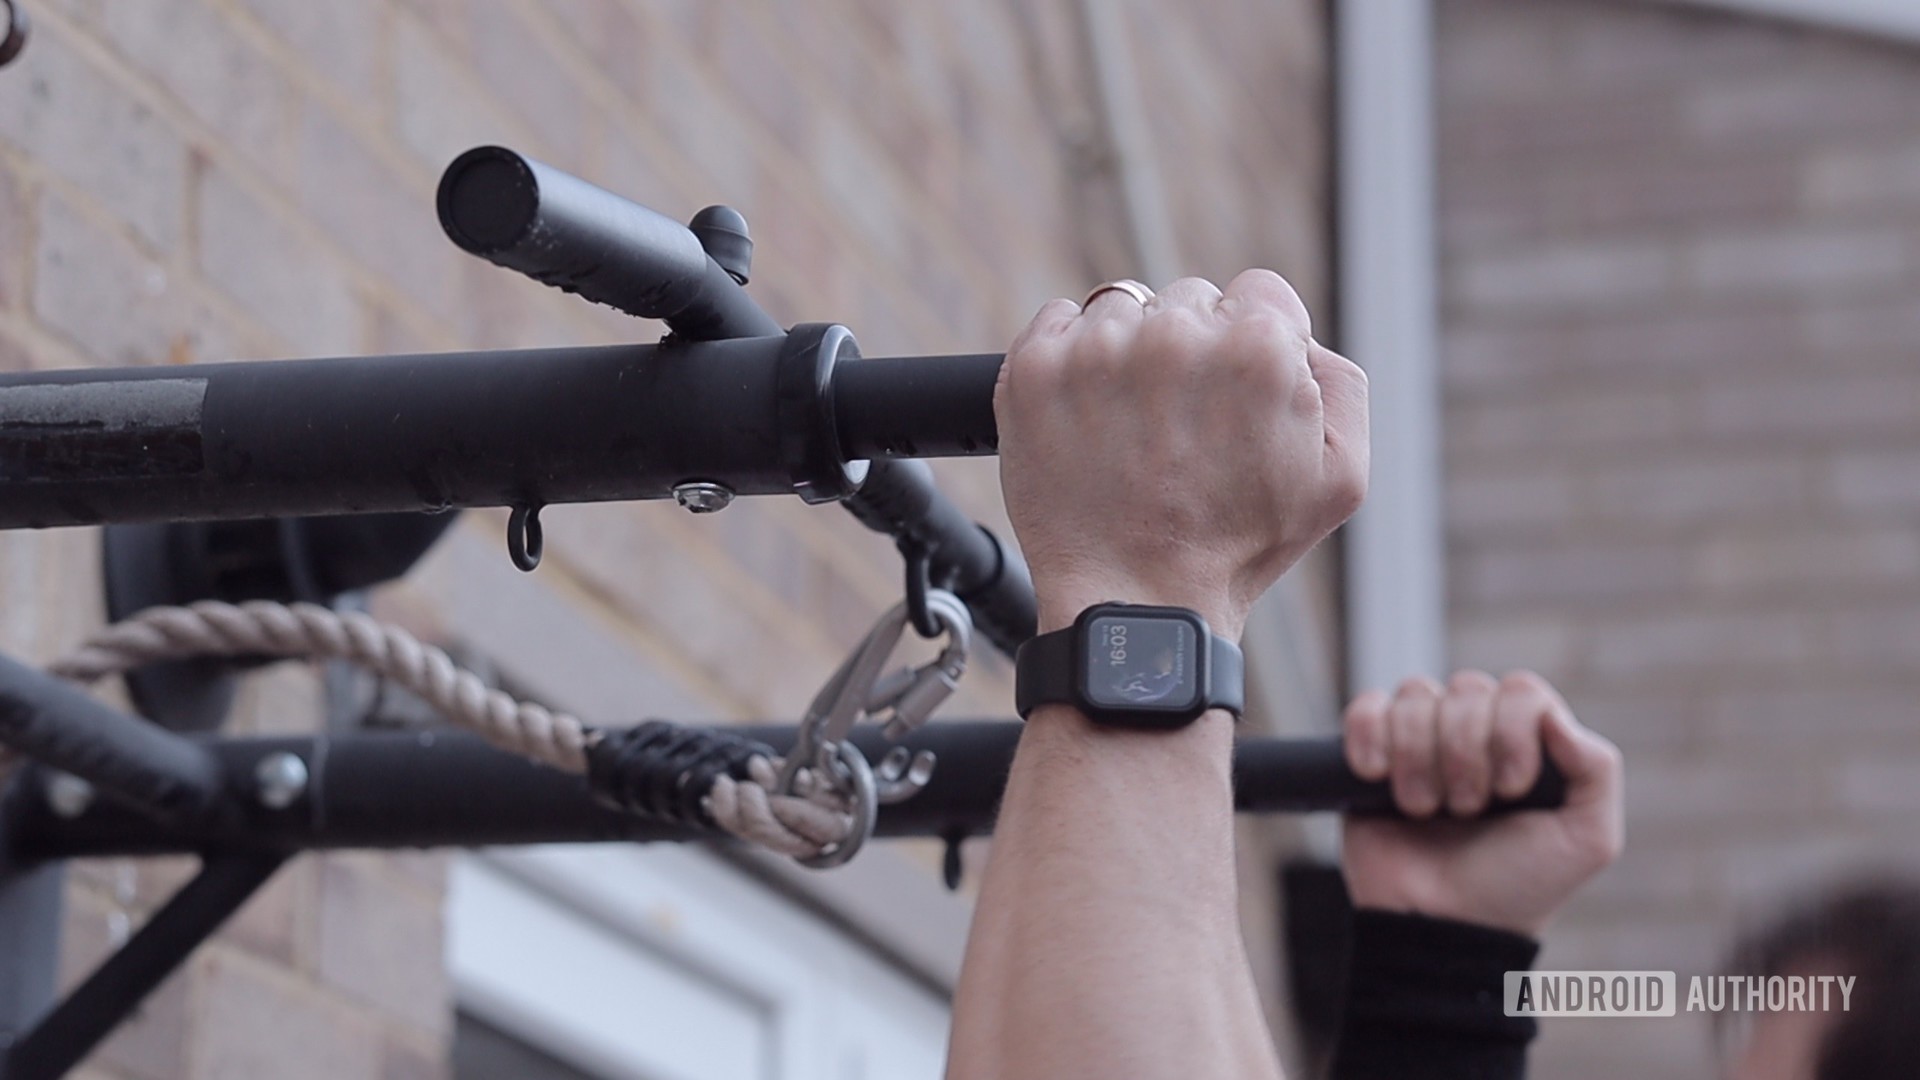 Apple Watch Fitness Tracker